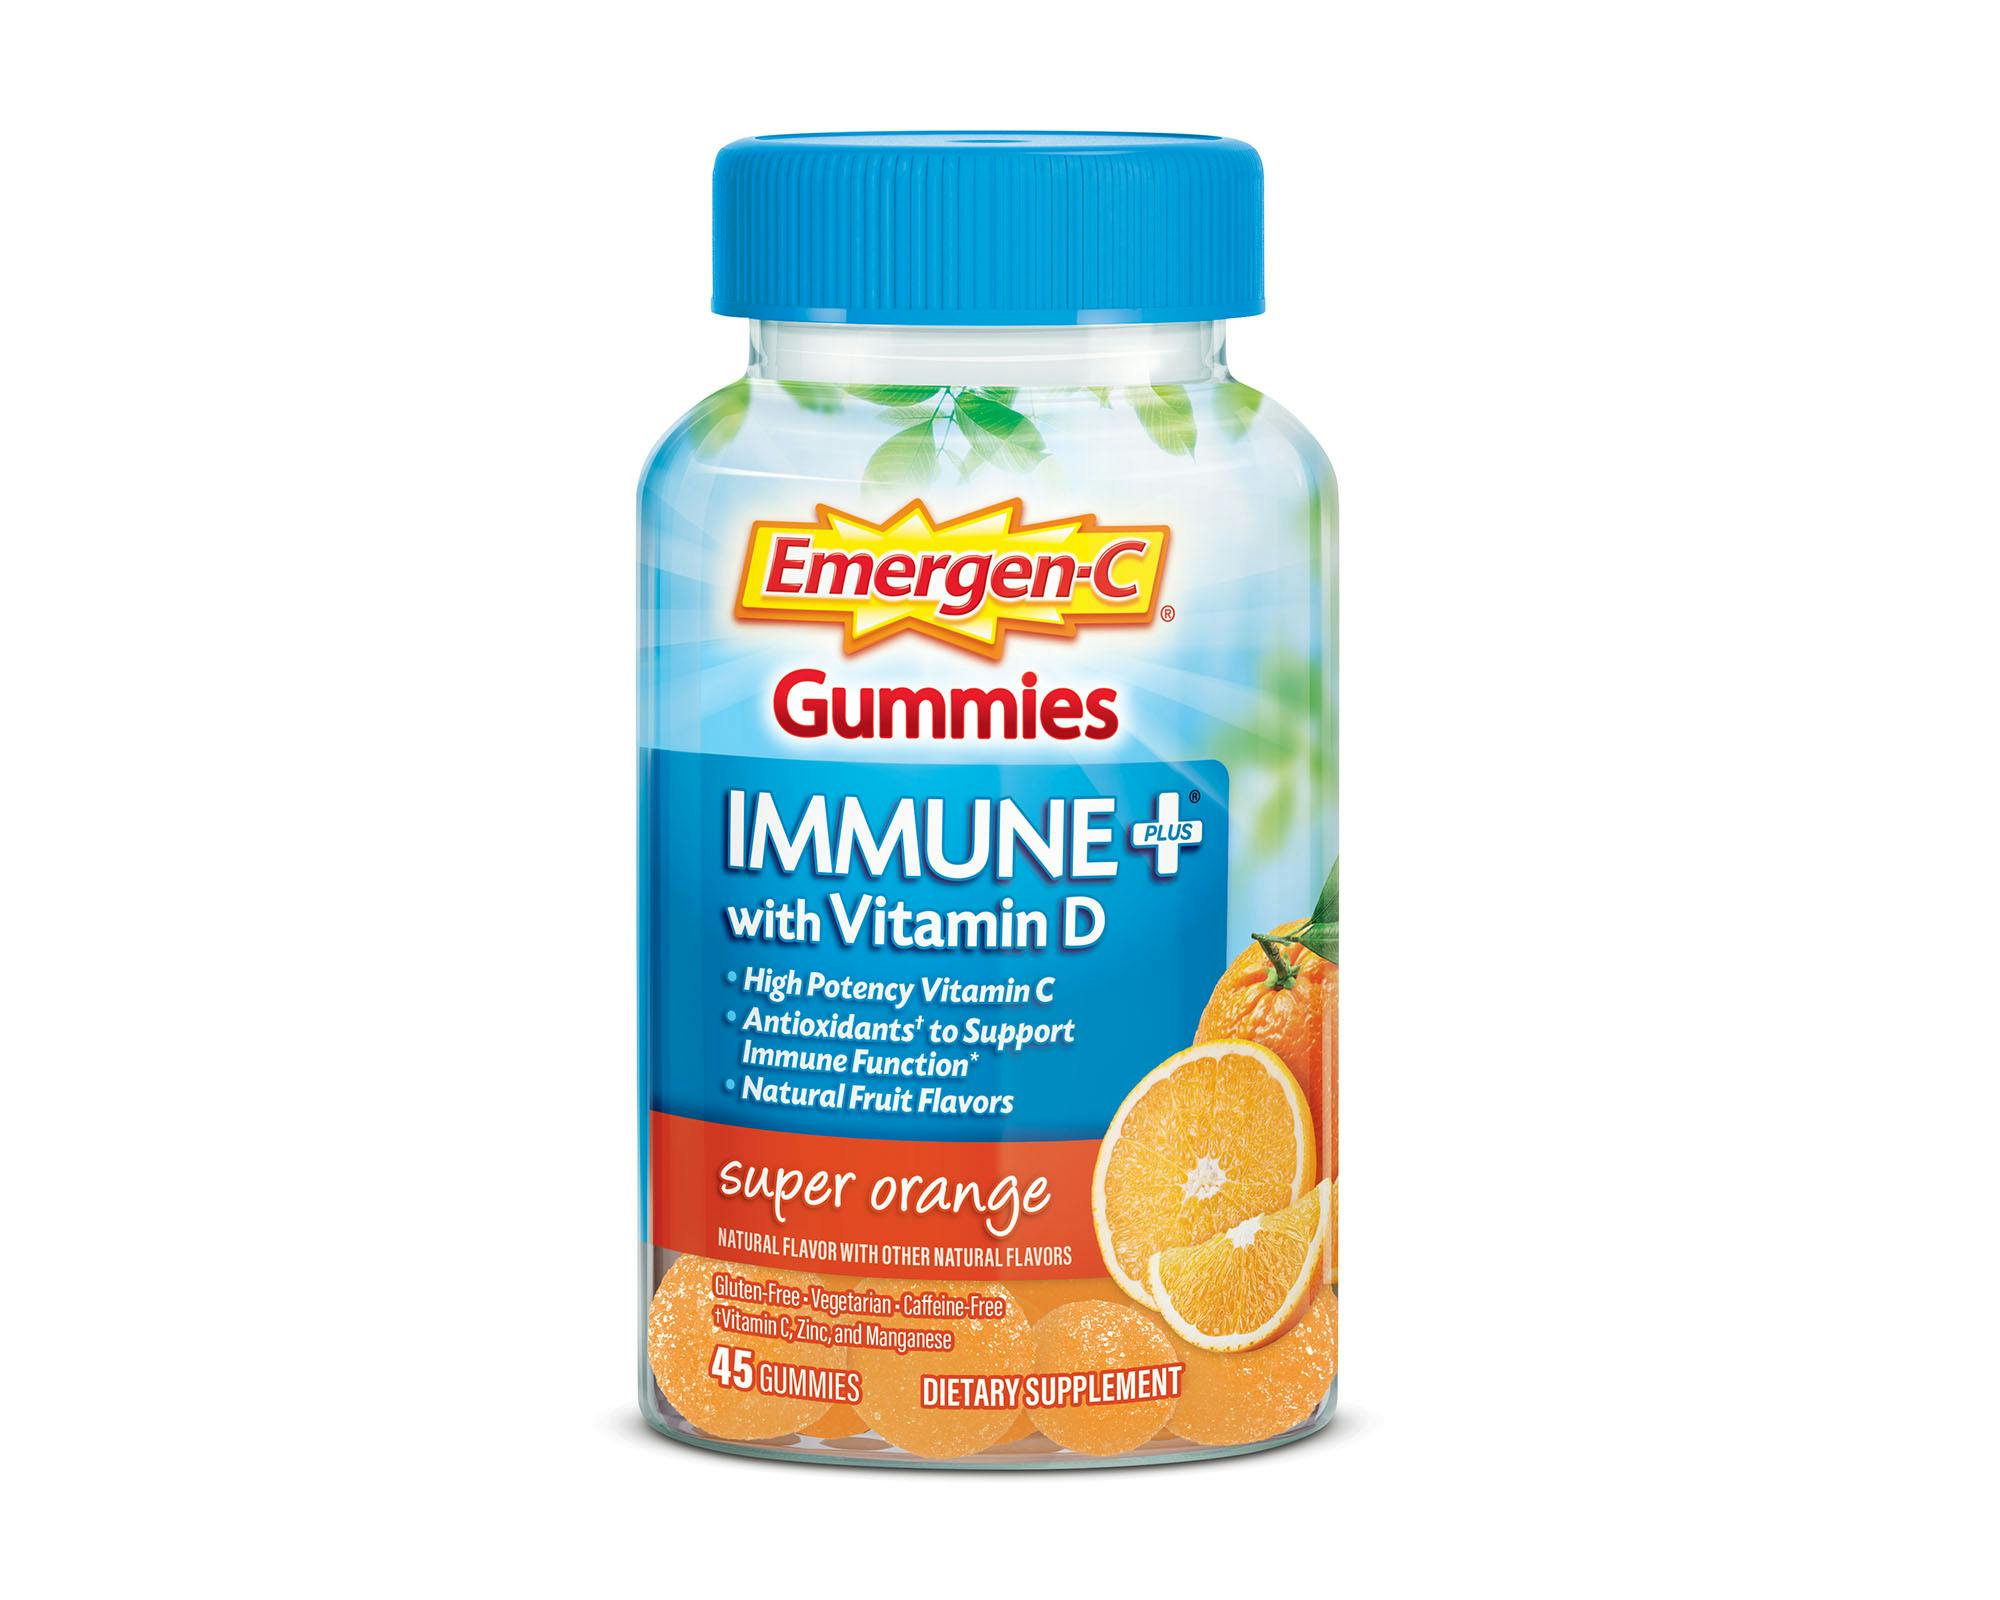 Super Orange Immune+ Support Gummies bottle